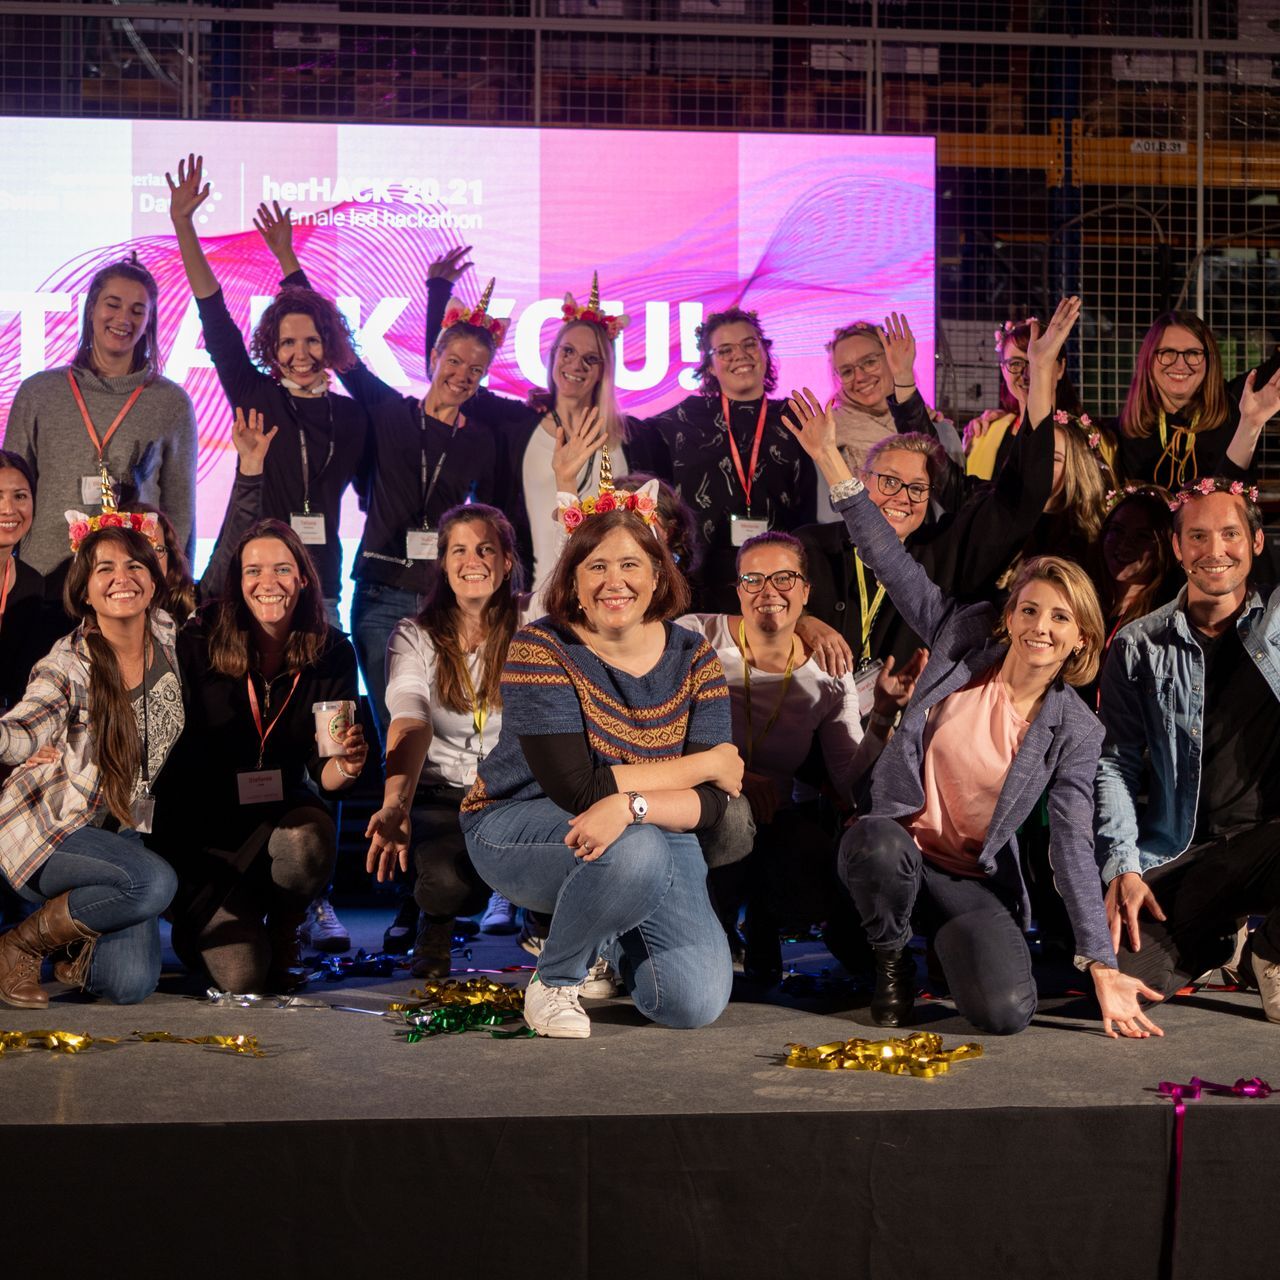 Na ženskem hackatonu "HerHack", ki je bil organiziran 6. in 7. novembra v okviru "Swiss Digital Day", je zmagala ekipa Team Iconics, ki jo sestavljajo Melanie Menge, Fiona Hediger, Yamina Siegrist, Maria Kliesch in Elisabeth MacKenzie (Foto: Moritz Schmid)